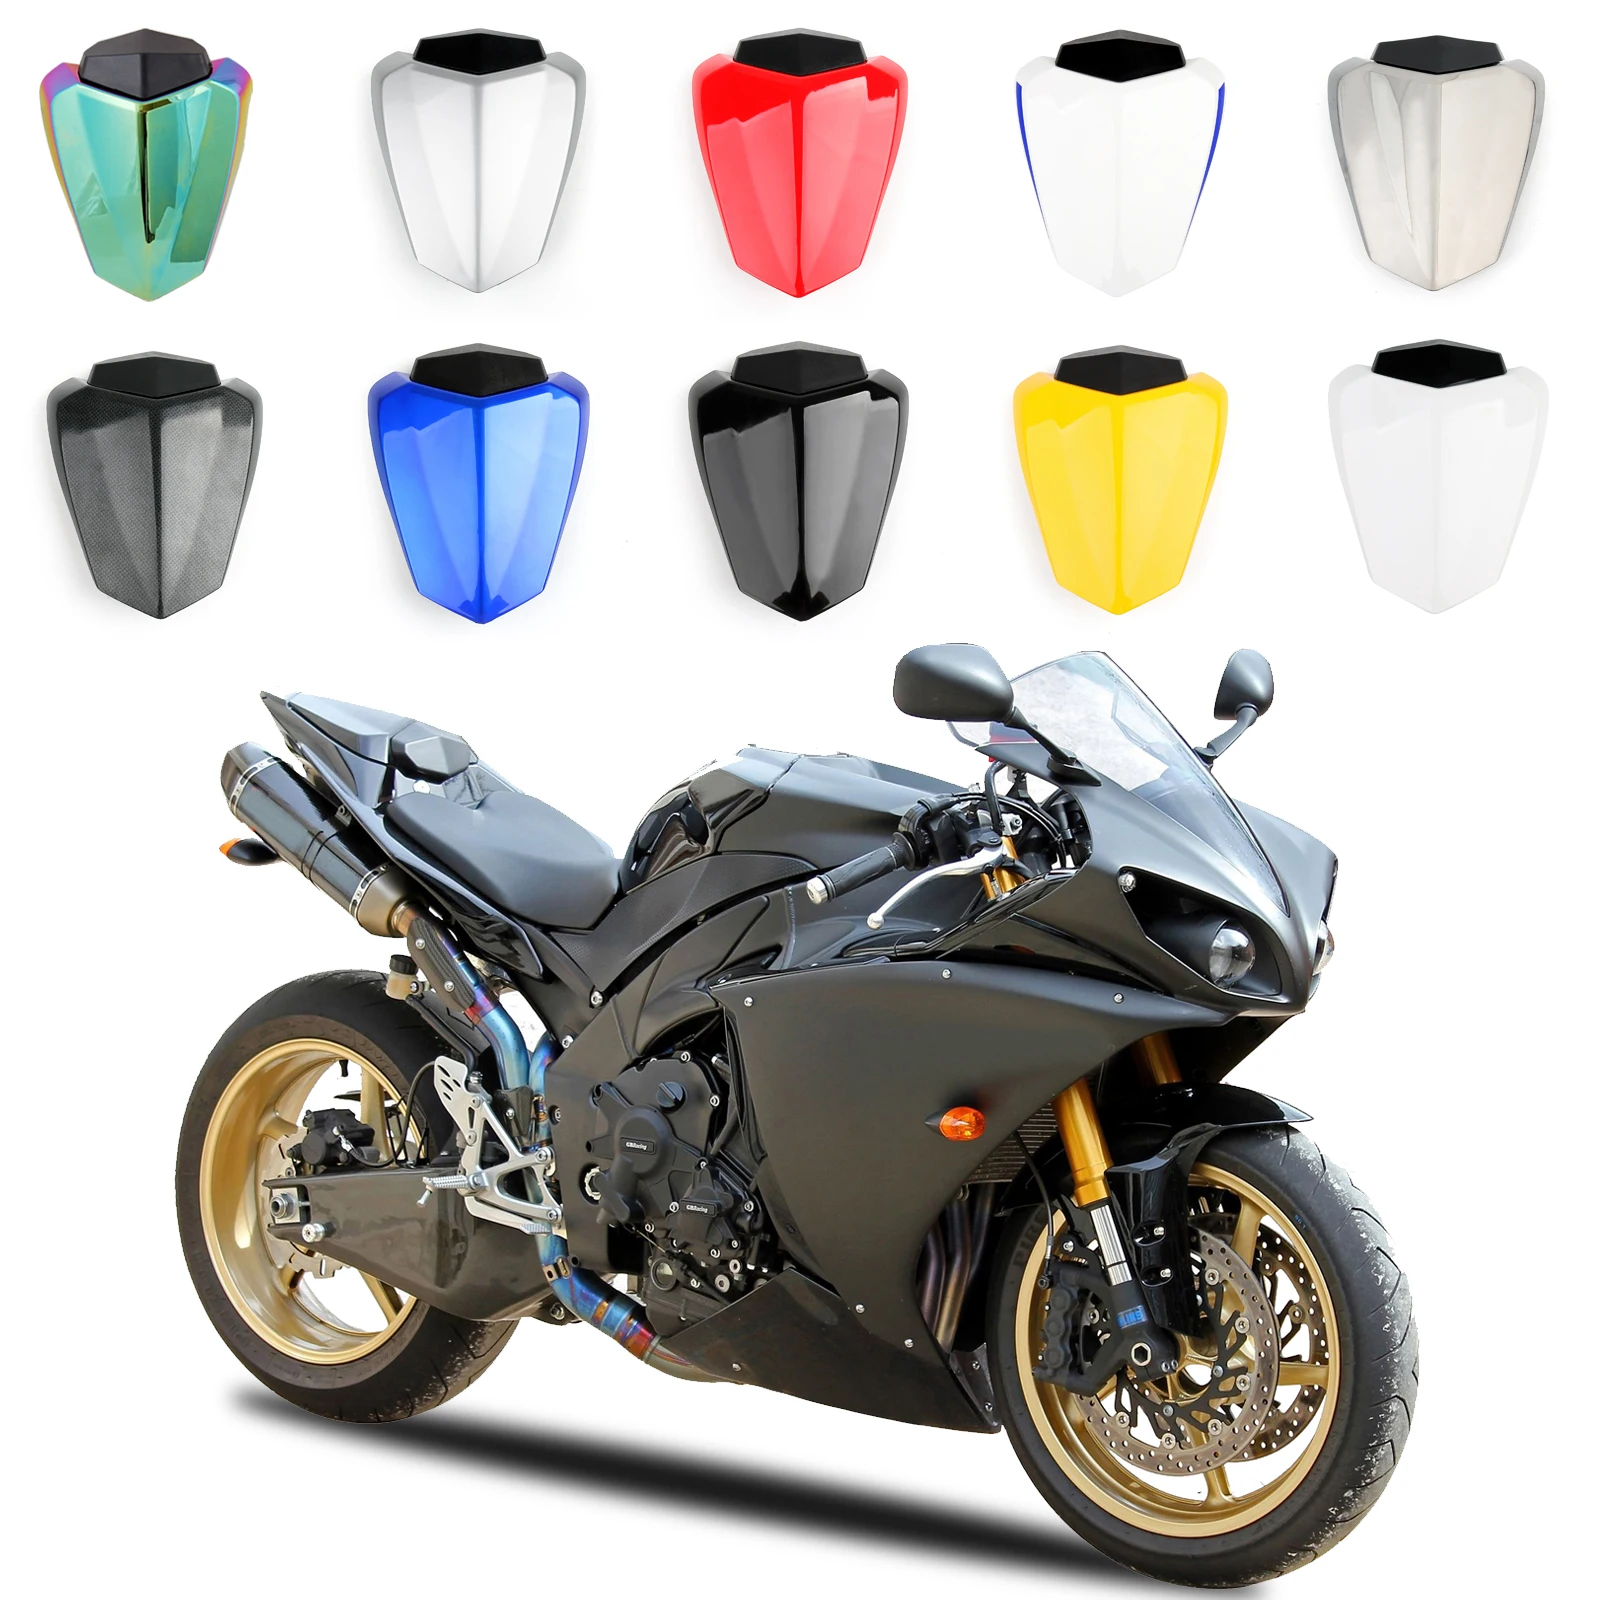 Artudatech-cubierta de carenado para asiento de motocicleta, cubierta de calidad para Yamaha 2009, 2010, 2011, 2012, 2013, 2014 R1